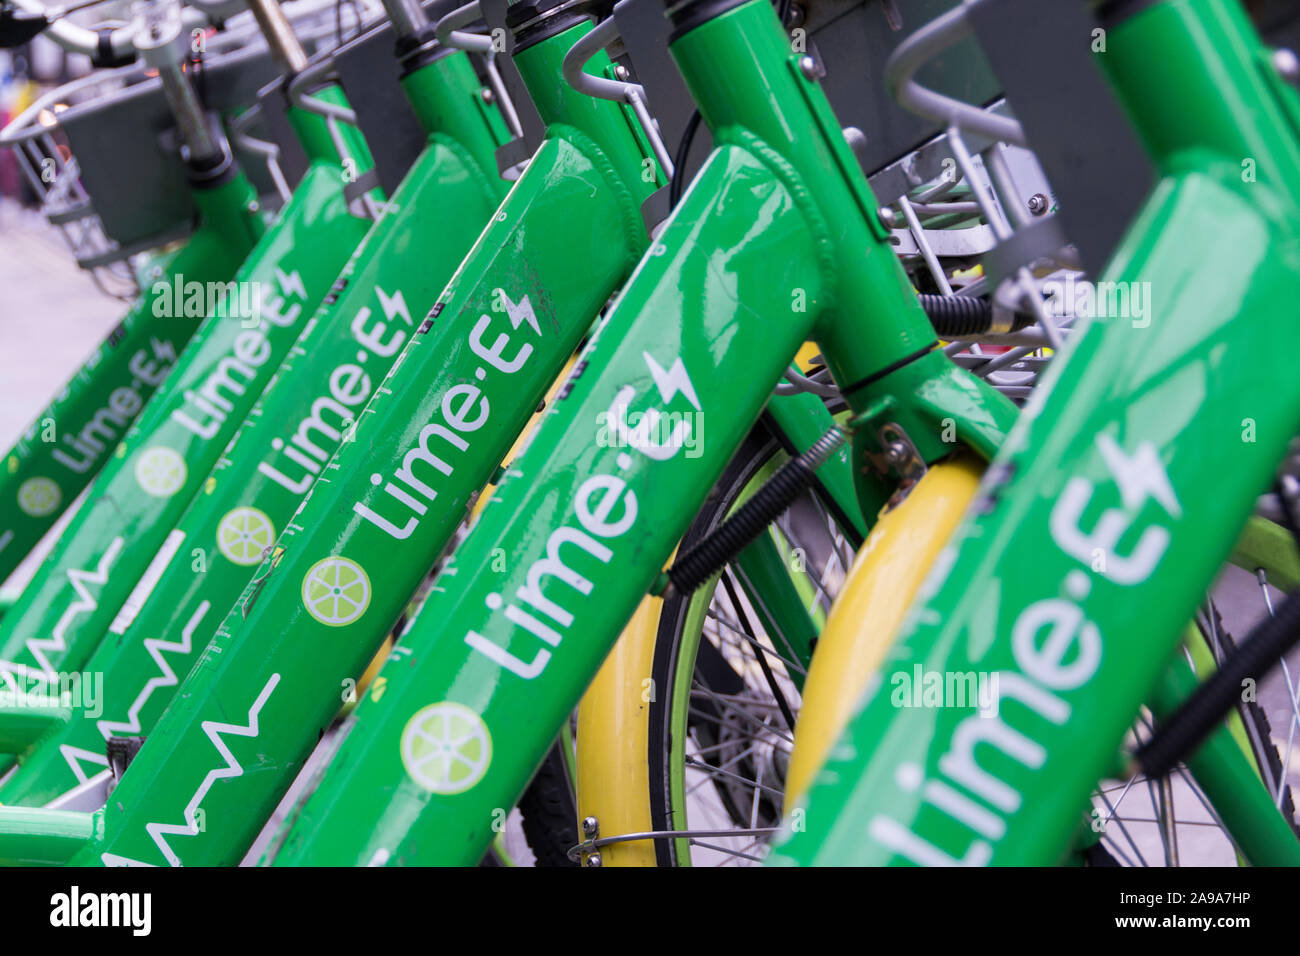 Nahaufnahme einer Reihe von Lime-E-Fahrradschildern Stockfoto